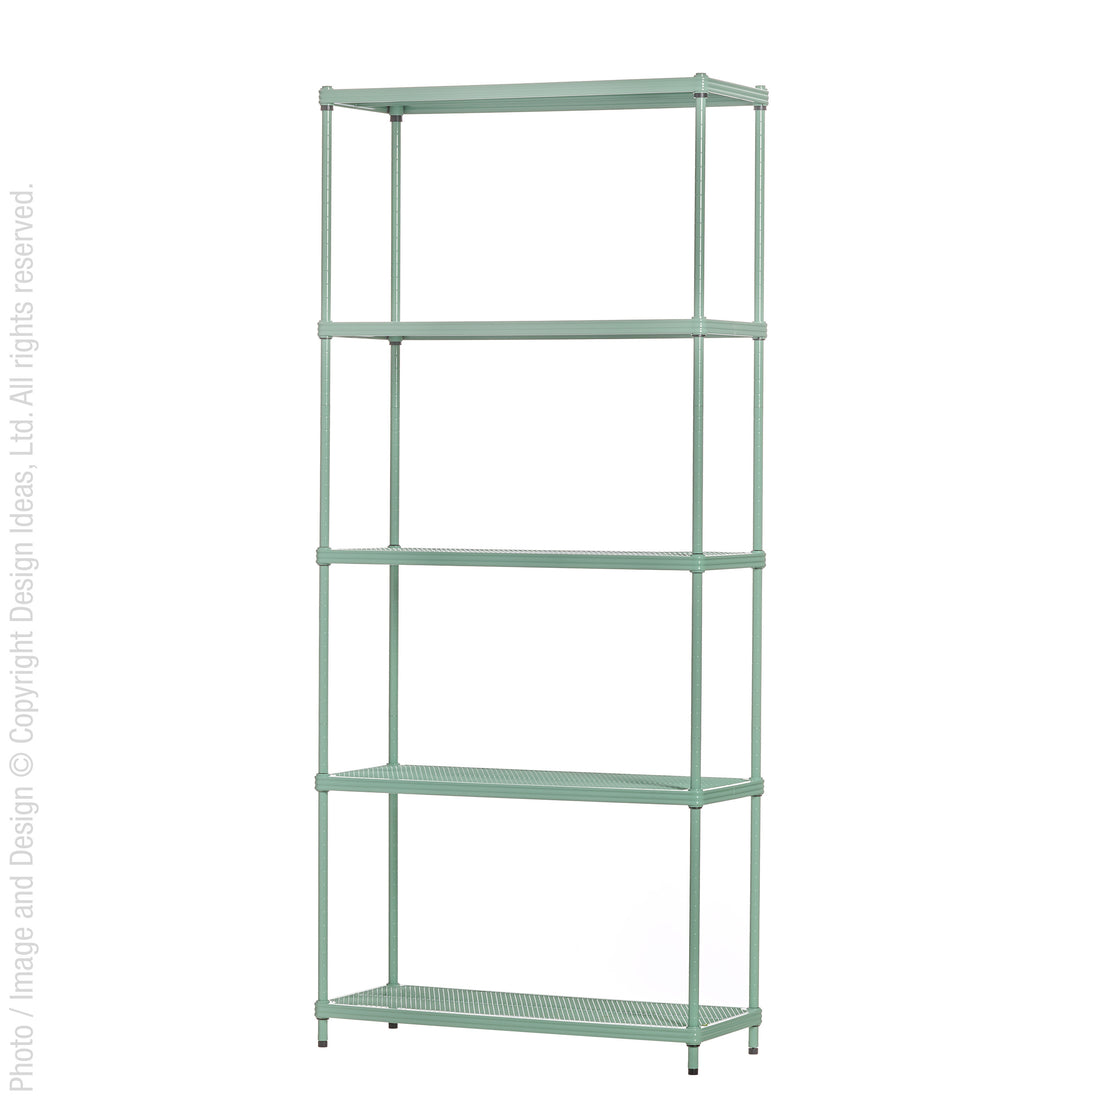 MeshWorks® epoxy coated steel bookshelf